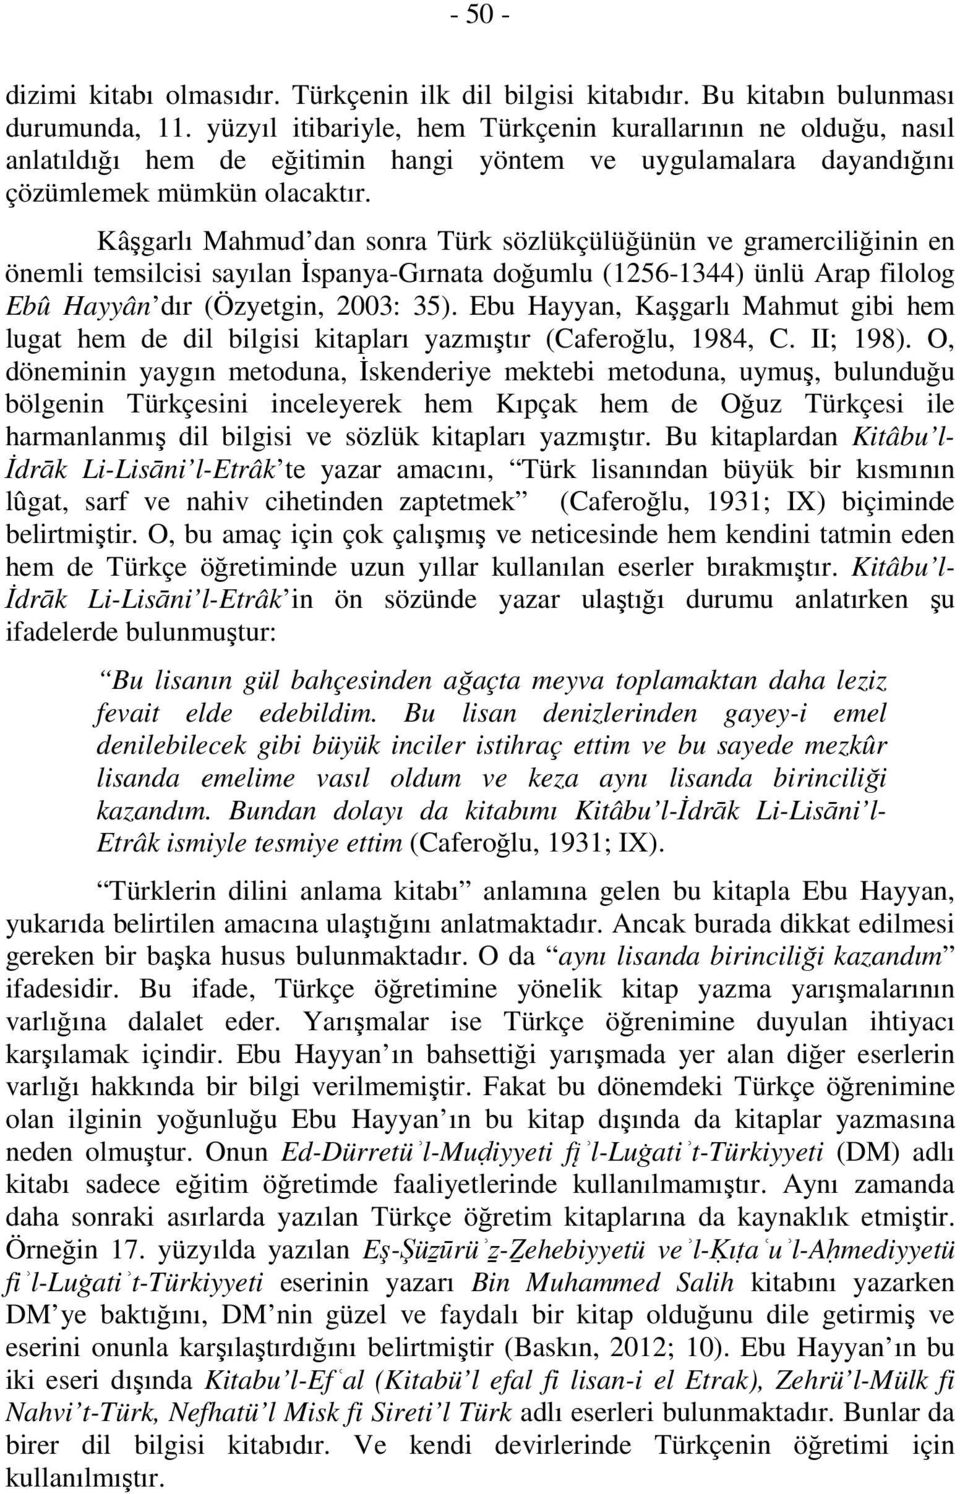 Kâşgarlı Mahmud dan sonra Türk sözlükçülüğünün ve gramerciliğinin en önemli temsilcisi sayılan İspanya-Gırnata doğumlu (1256-1344) ünlü Arap filolog Ebû Hayyân dır (Özyetgin, 2003: 35).